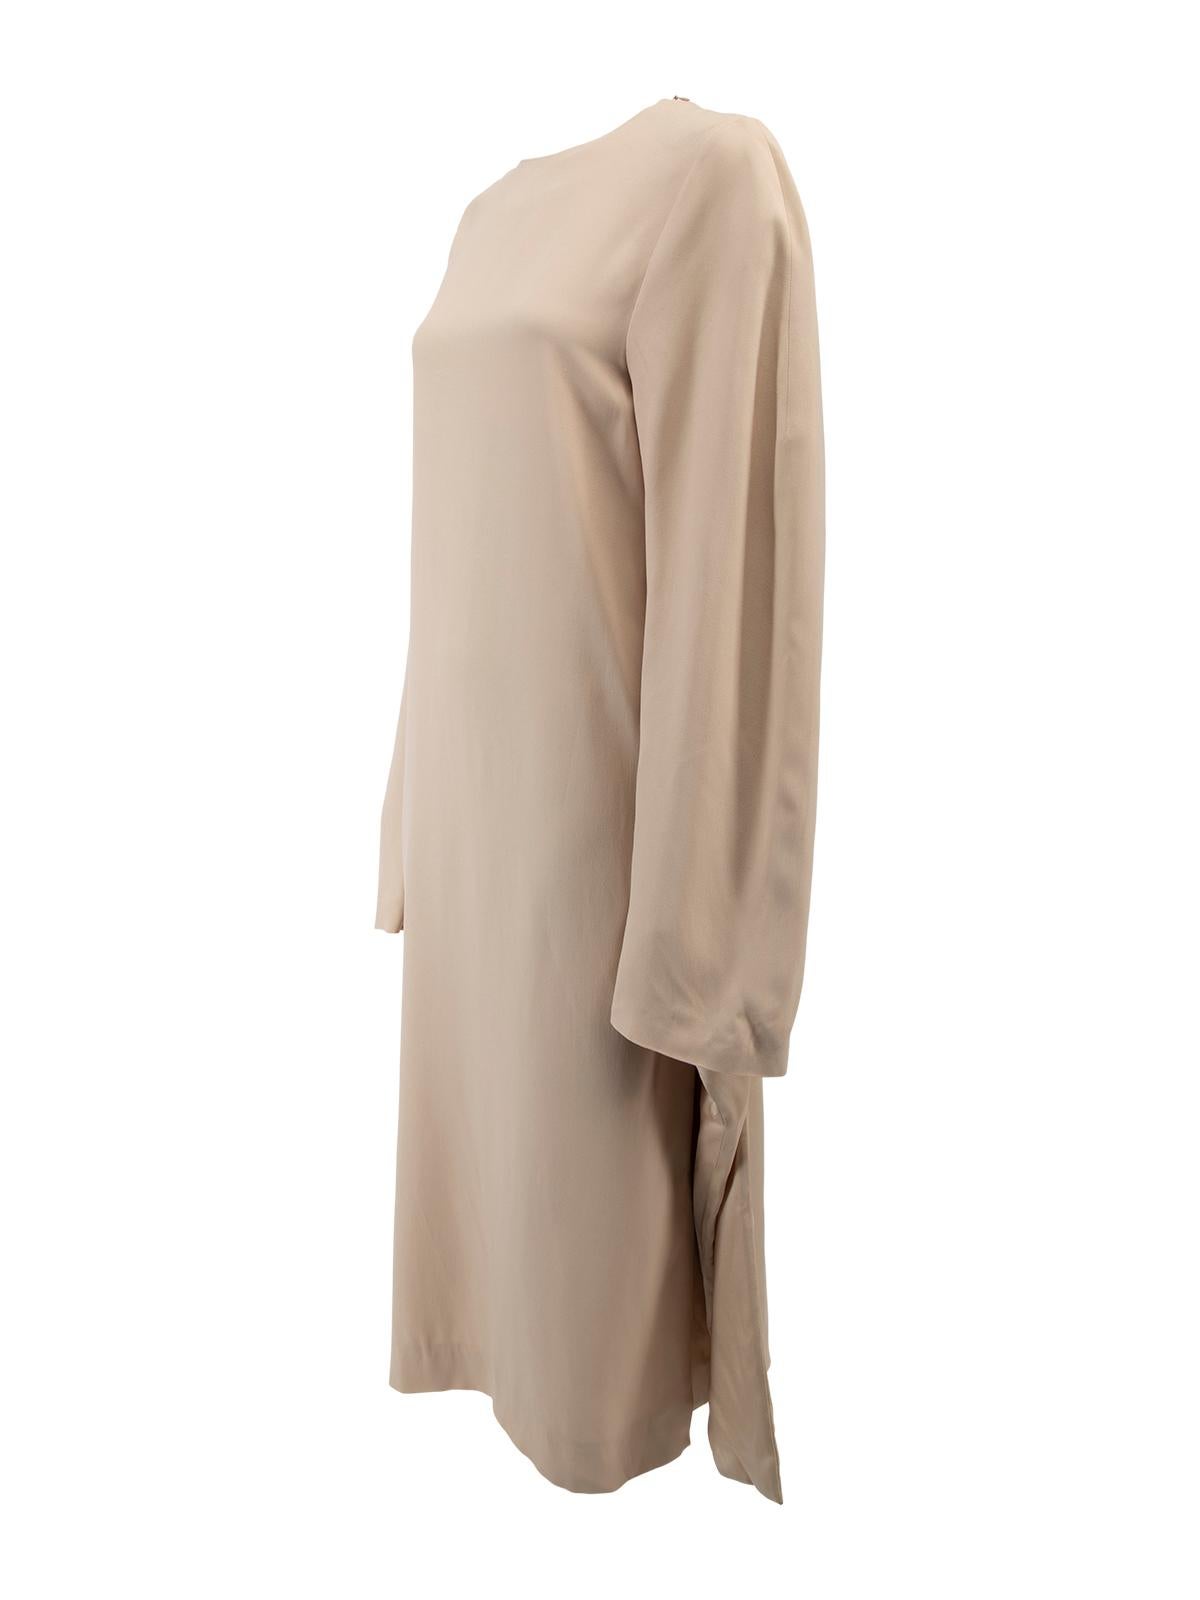 Women's Jil Sander Pastel Nude Long Sleeve Maxi Dress Size S For Sale